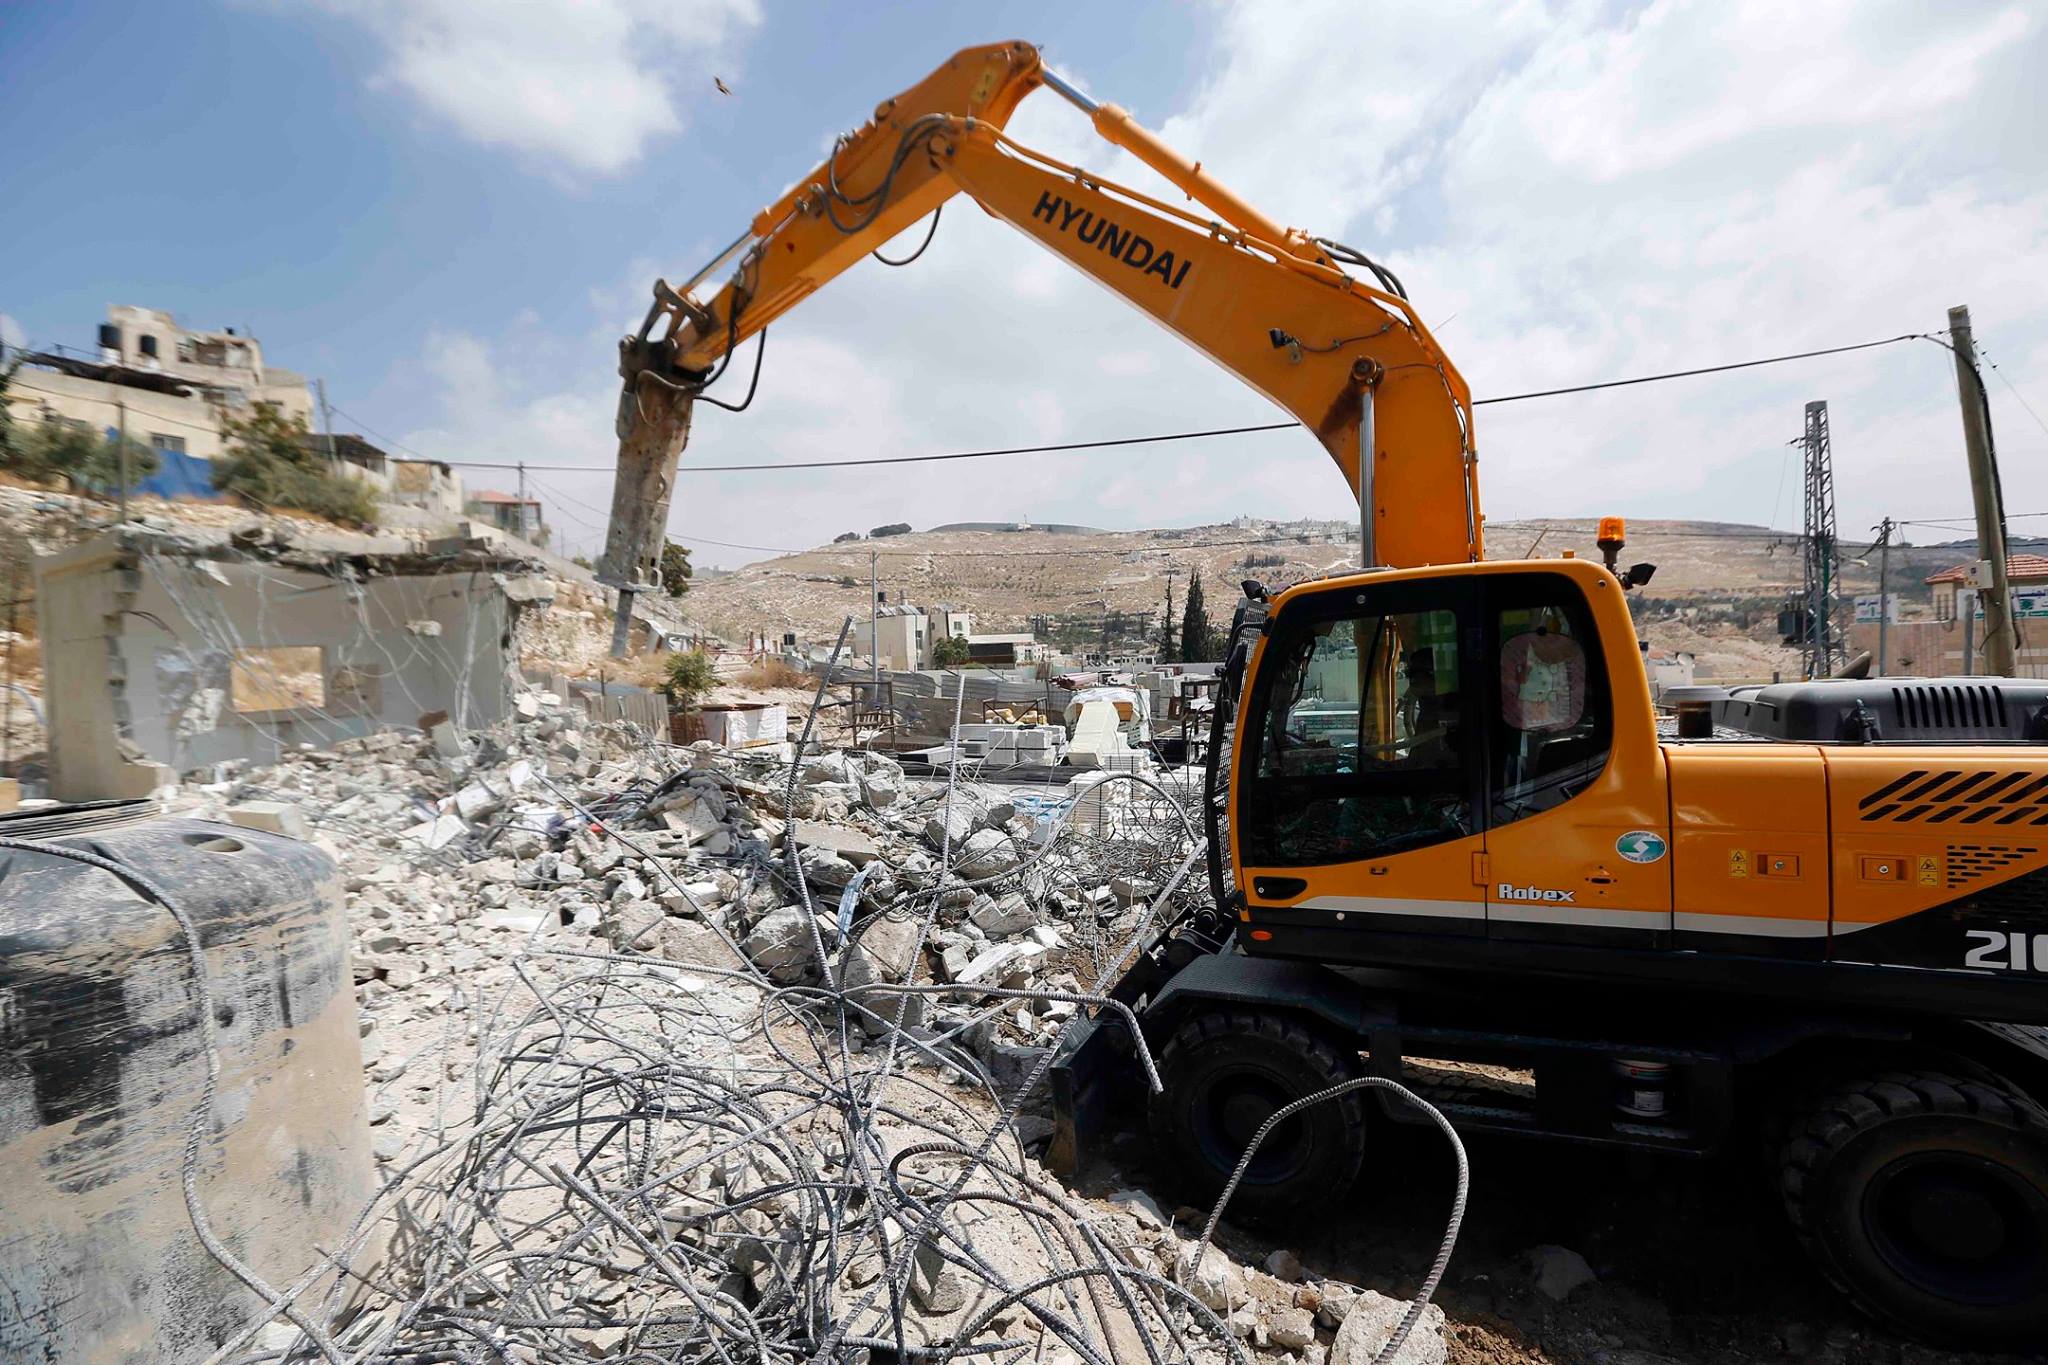 الاحتلال يهدم منزلين في خلة العيدة شرق الخليل